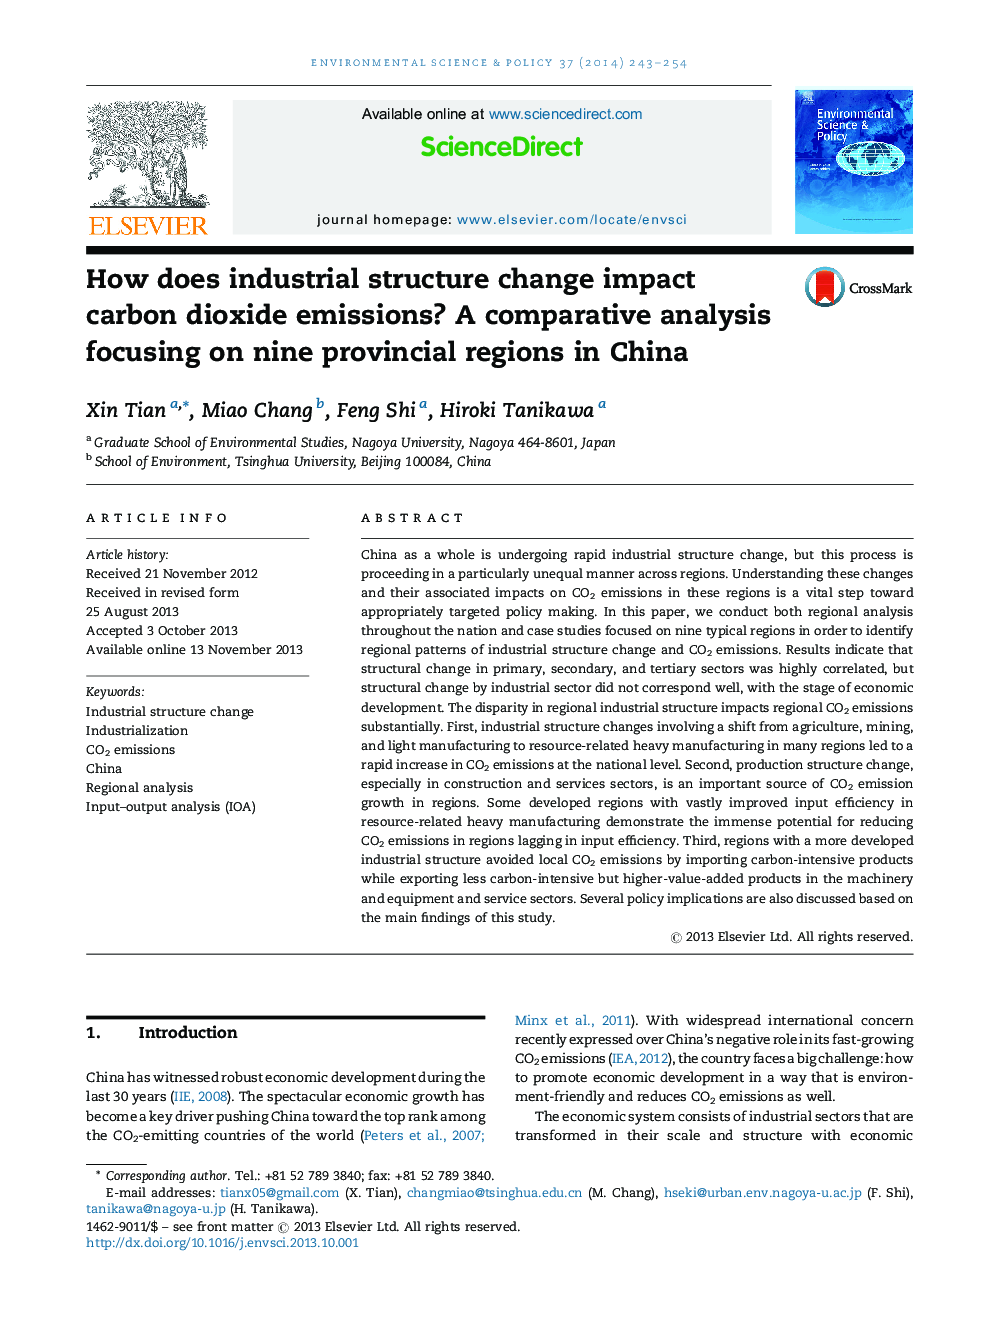 چگونه ساختار صنعتی تغییرات را تحت تاثیر قرار می دهد انتشار دی اکسید کربن؟ تجزیه و تحلیل تطبیقی ​​با تمرکز بر 9 استان استانی در چین 